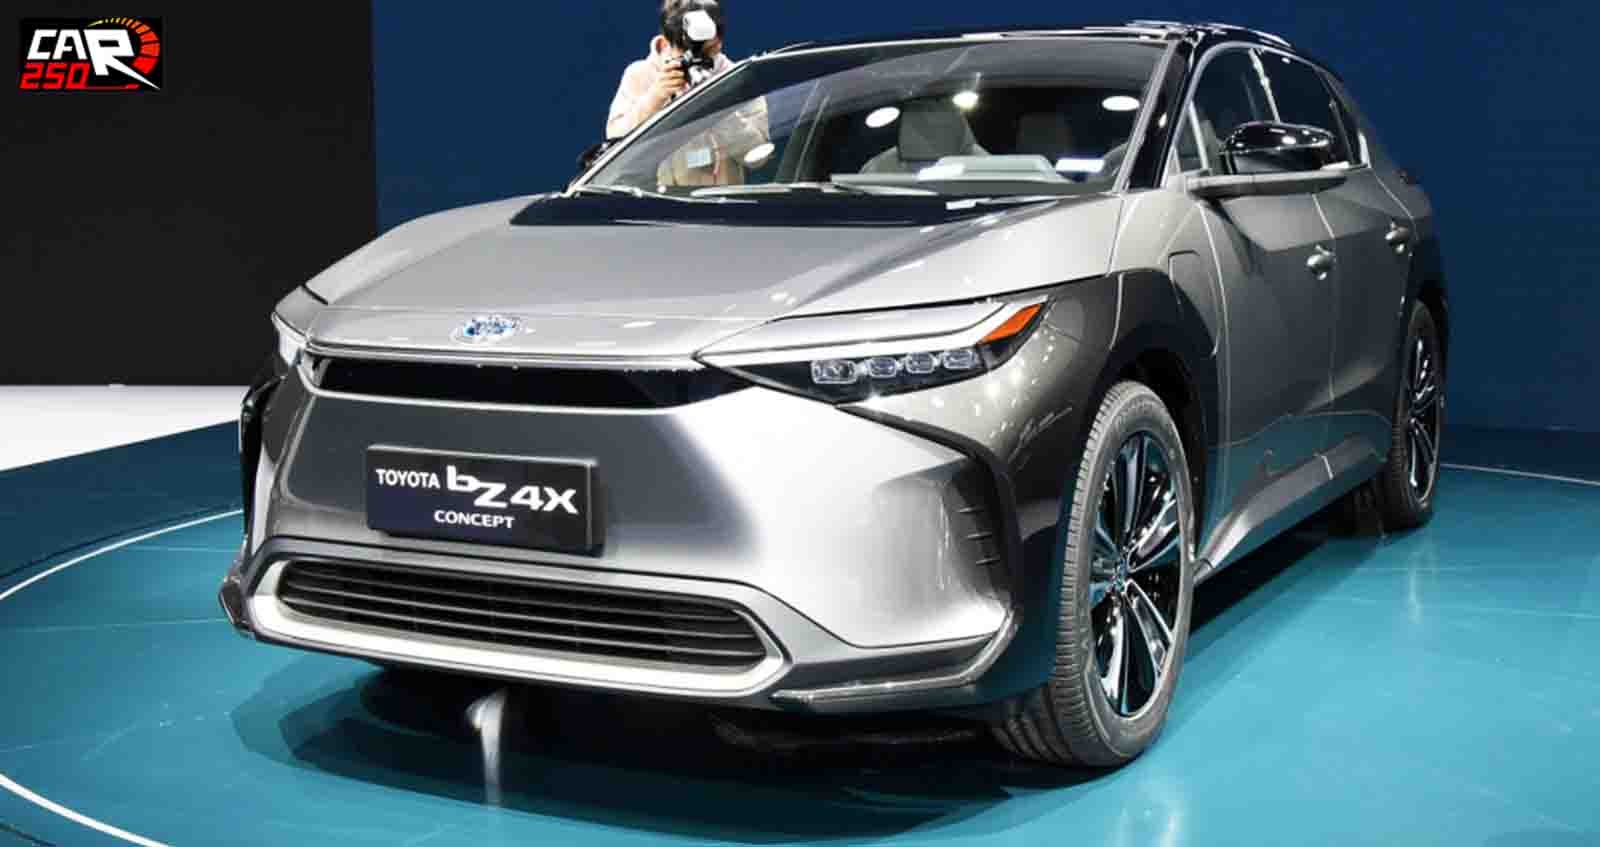 ภาพคันจริง TOYOTA bZ4X EV Concept ไฟฟ้าใหม่ของค่าย ในงาน เซี่ยงไฮ้มอเตอร์โชว์ 2021